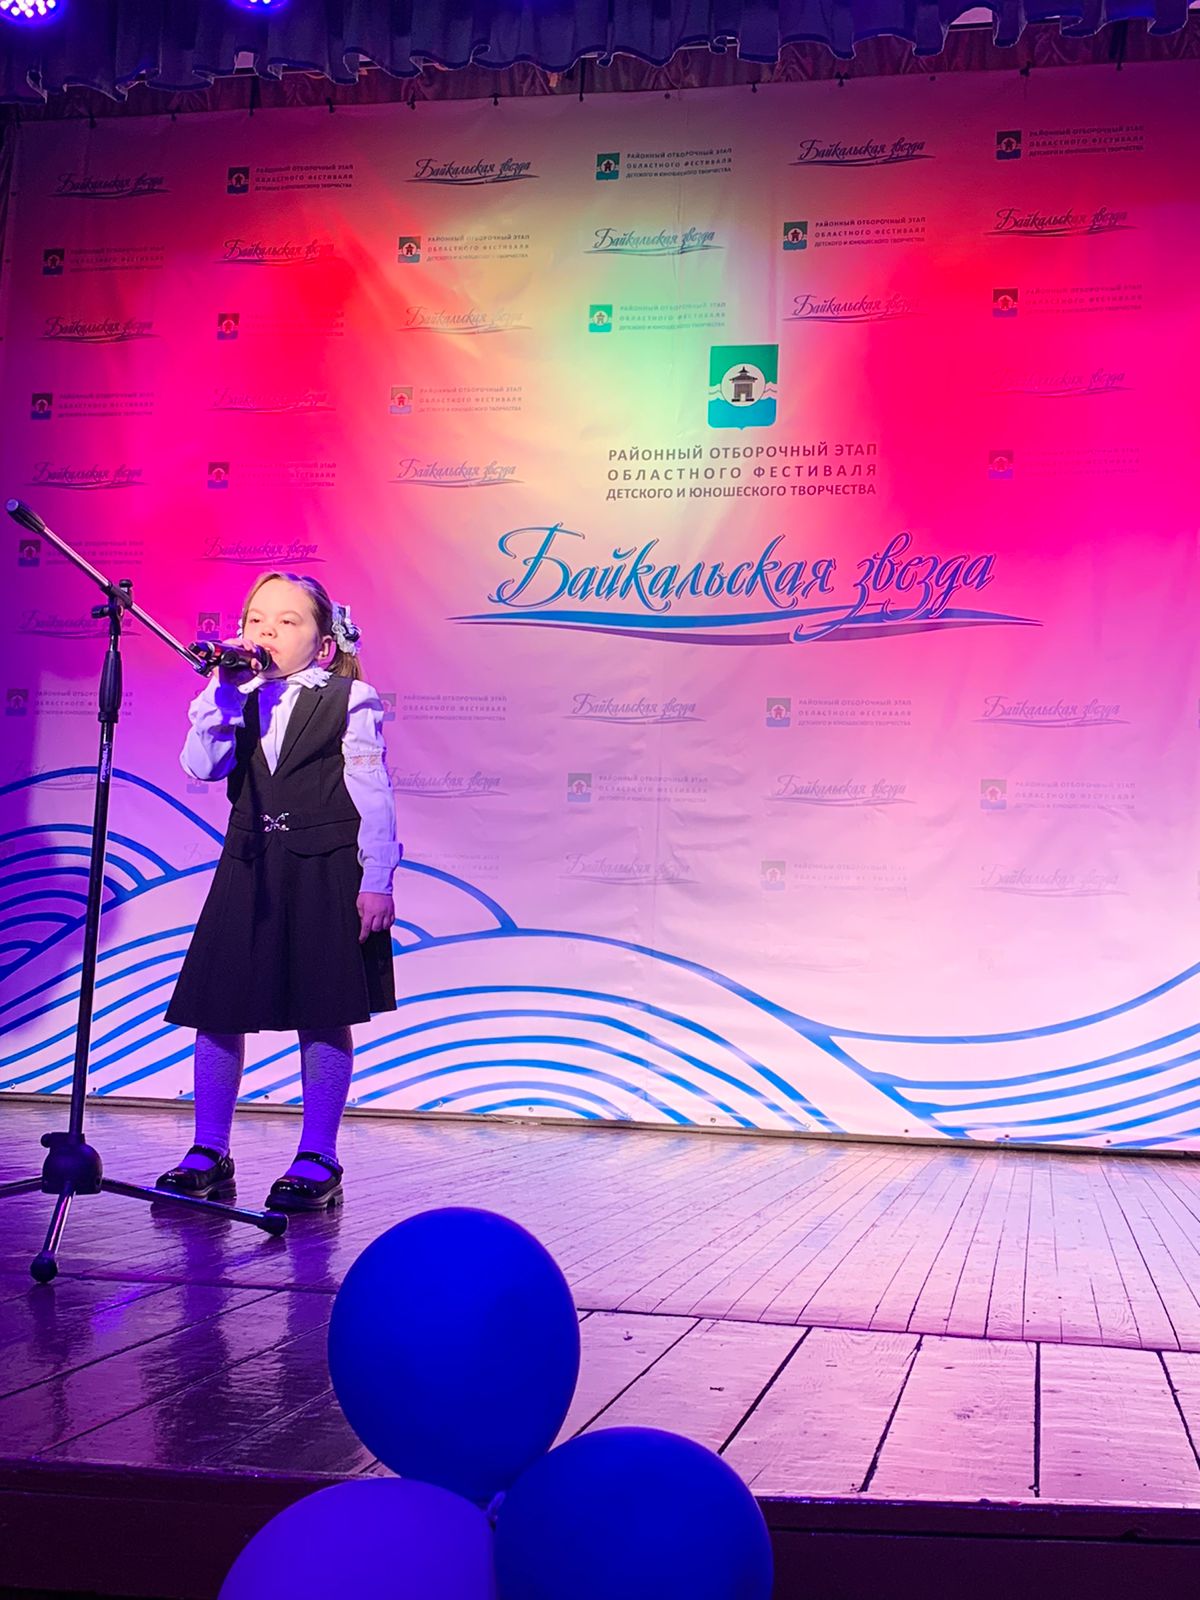 В Братском районе прошел районный отборочный этап областного фестиваля детского и юношеского творчества «Байкальская звезда»